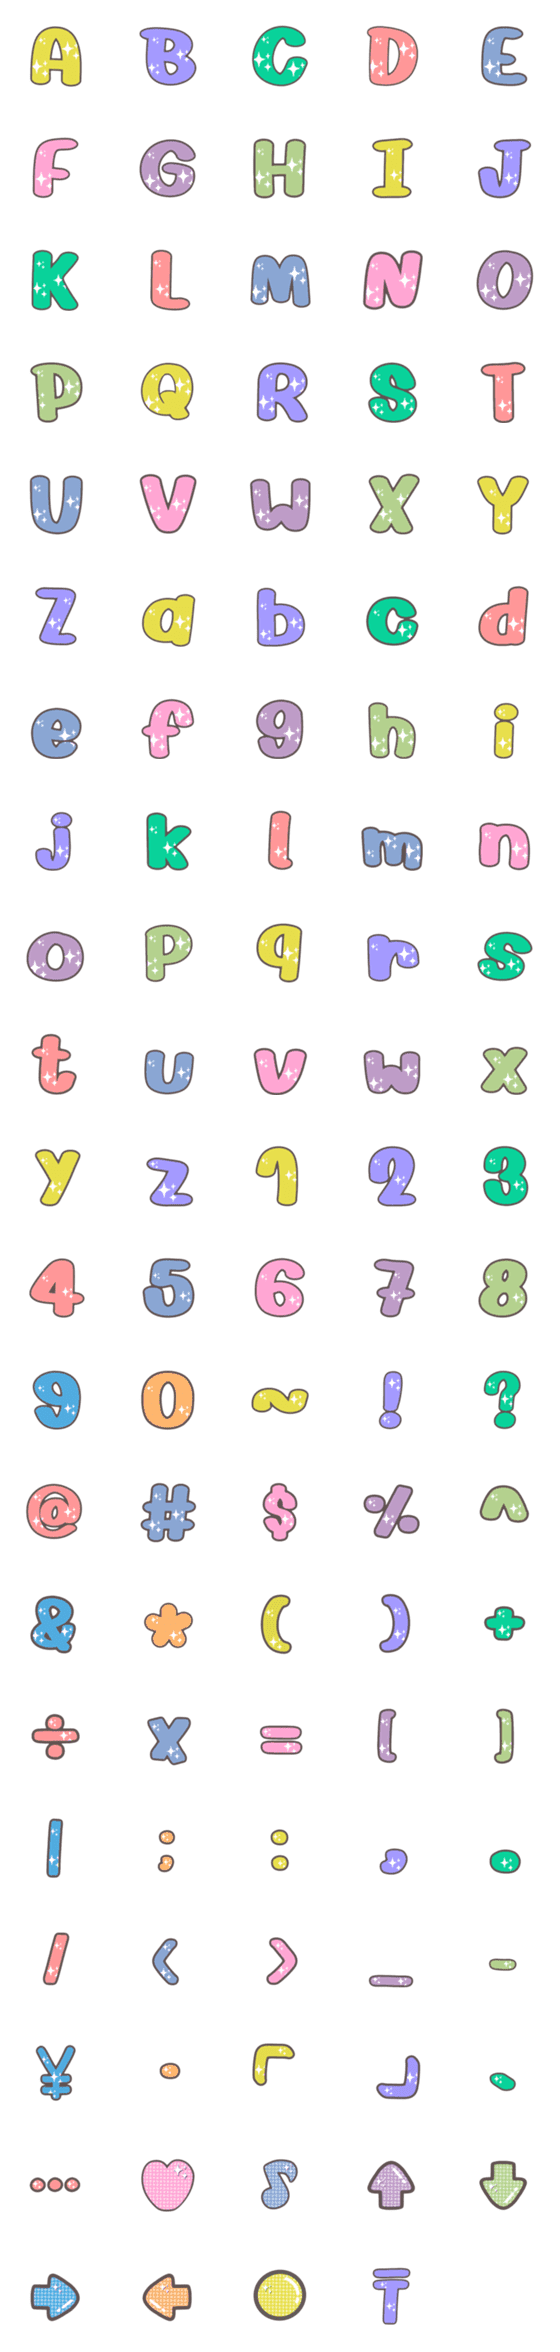 [LINE絵文字]ABC 123 Alphabet cute emoji V.3の画像一覧